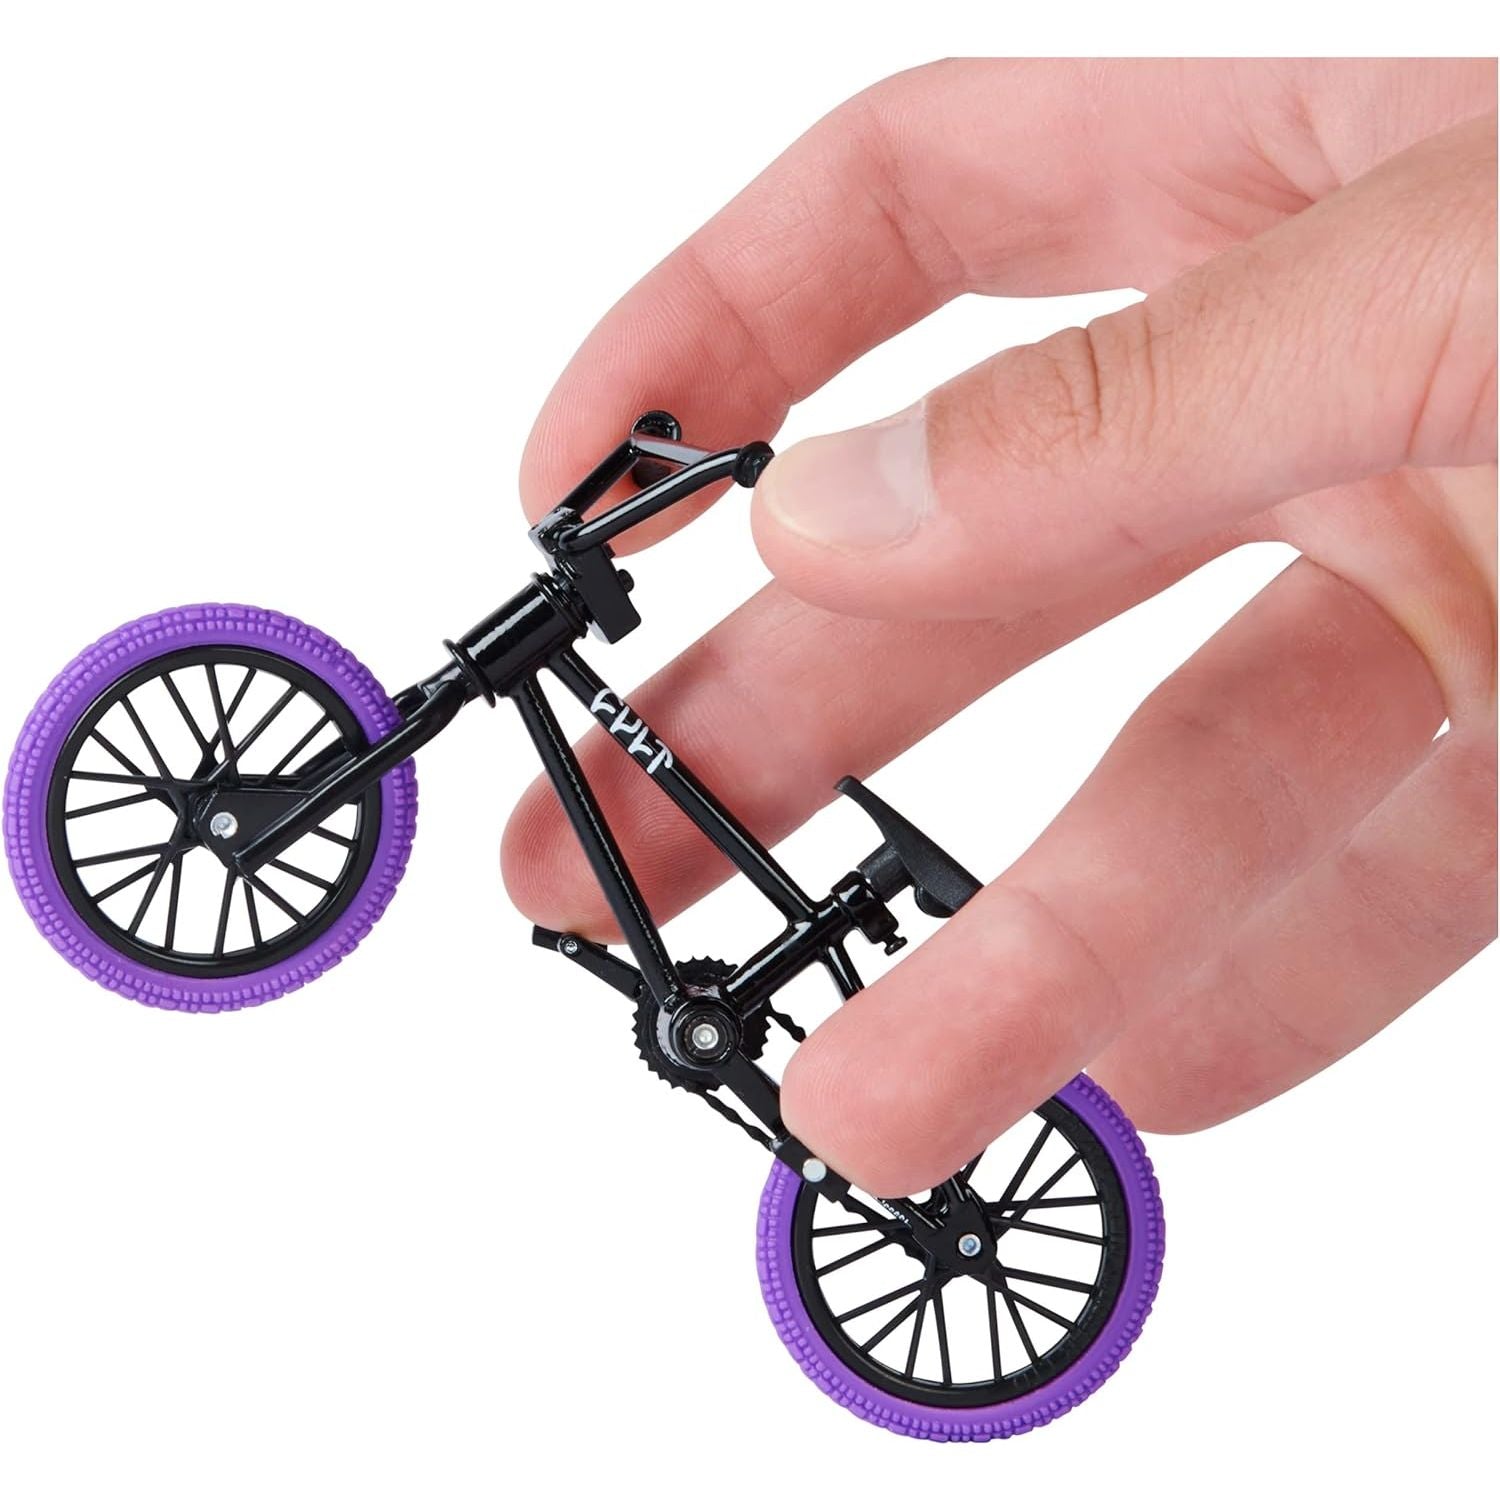 مجموعة من 3 قطع من Tech Deck، دراجة BMX Finger Bike، ألعاب دراجات BMX صغيرة قابلة للتجميع والتخصيص لهواة الجمع